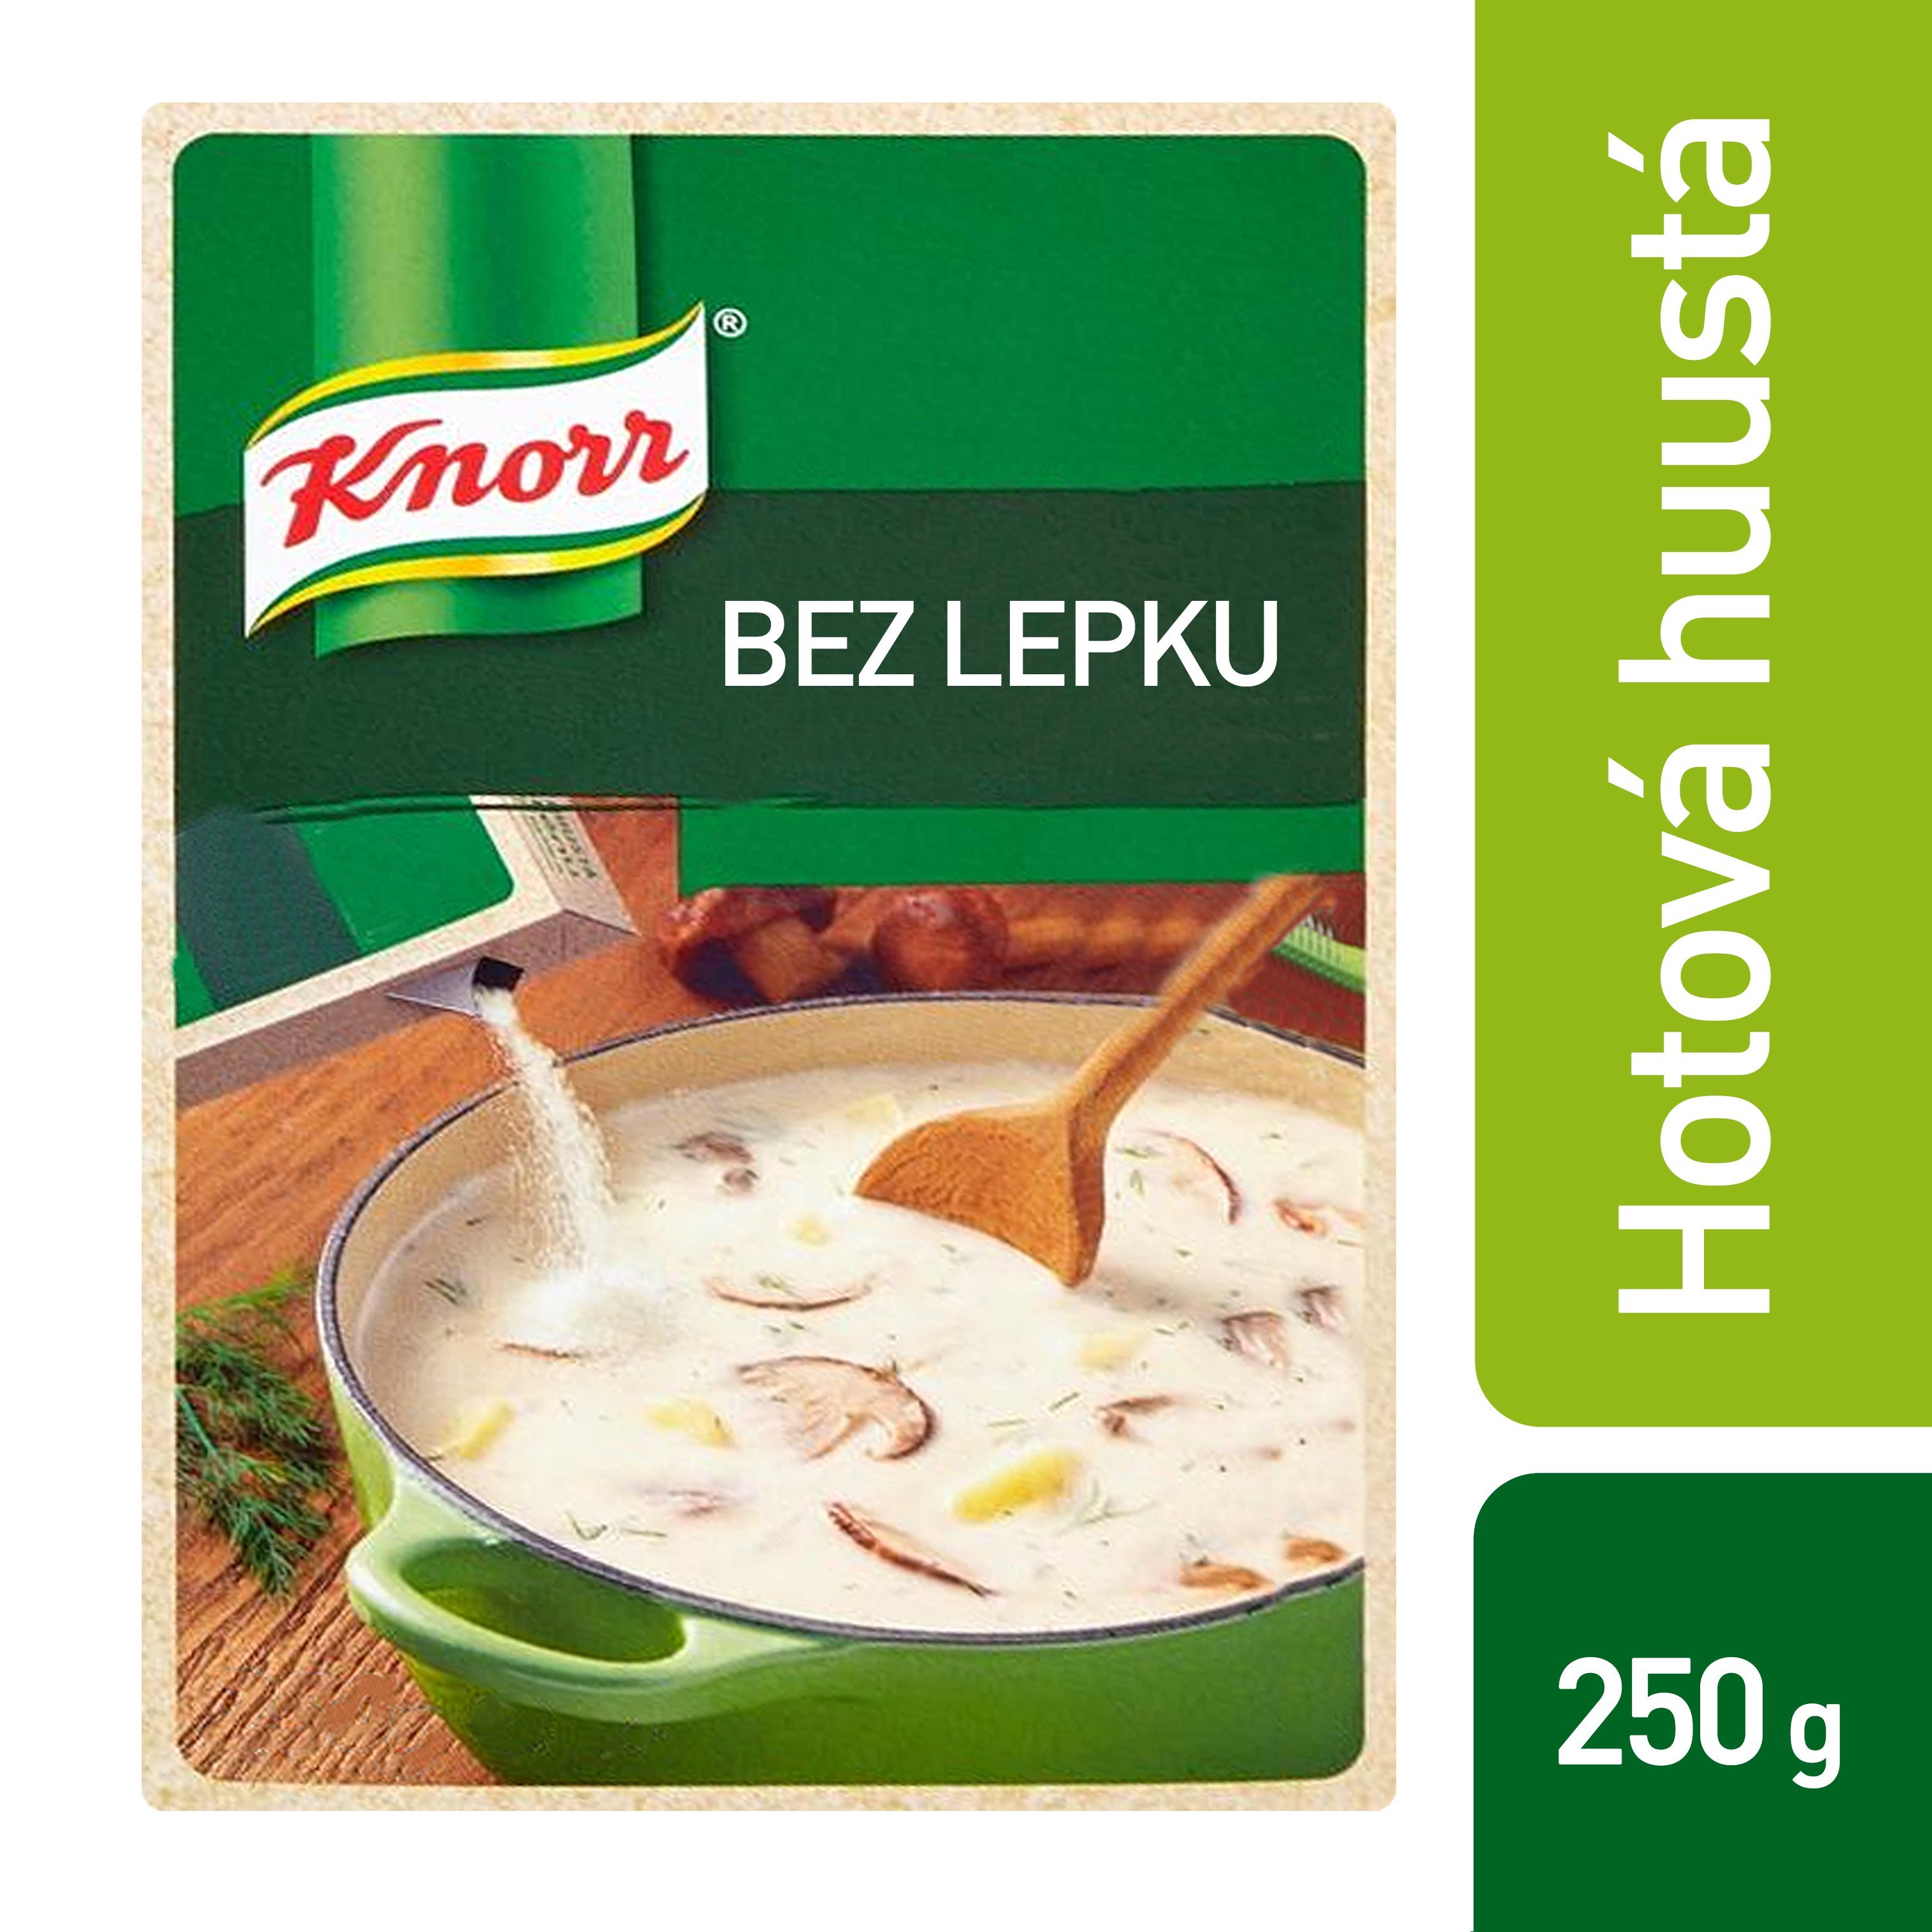 Knorr Hotová huustá bez lepku - 